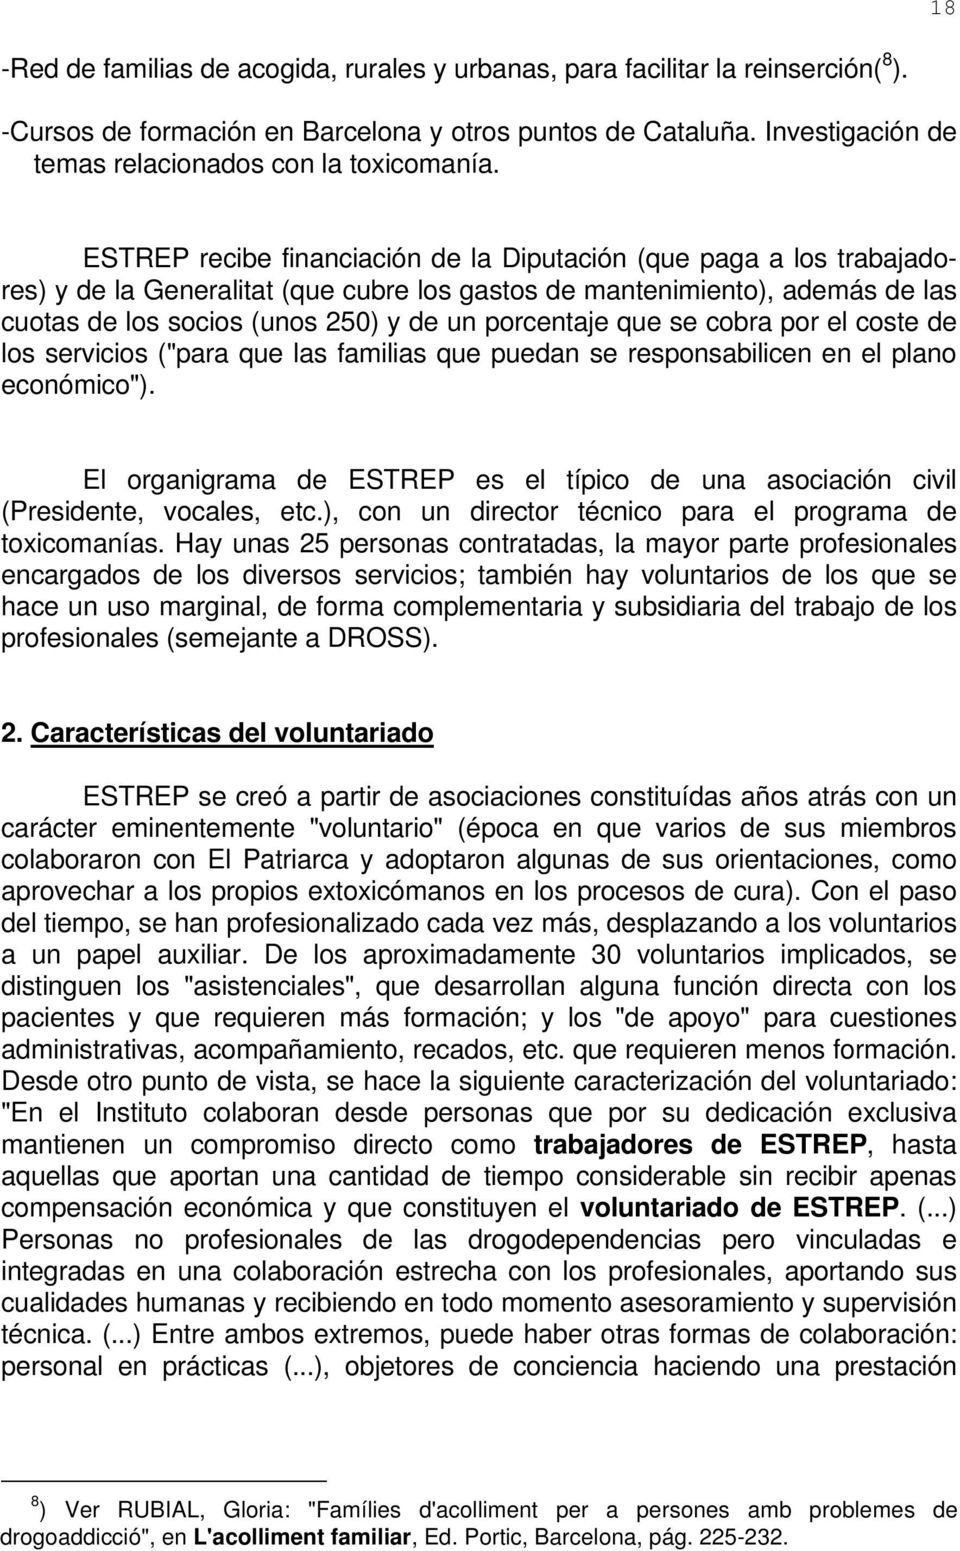 ESTREP recibe financiación de la Diputación (que paga a los trabajadores) y de la Generalitat (que cubre los gastos de mantenimiento), además de las cuotas de los socios (unos 250) y de un porcentaje